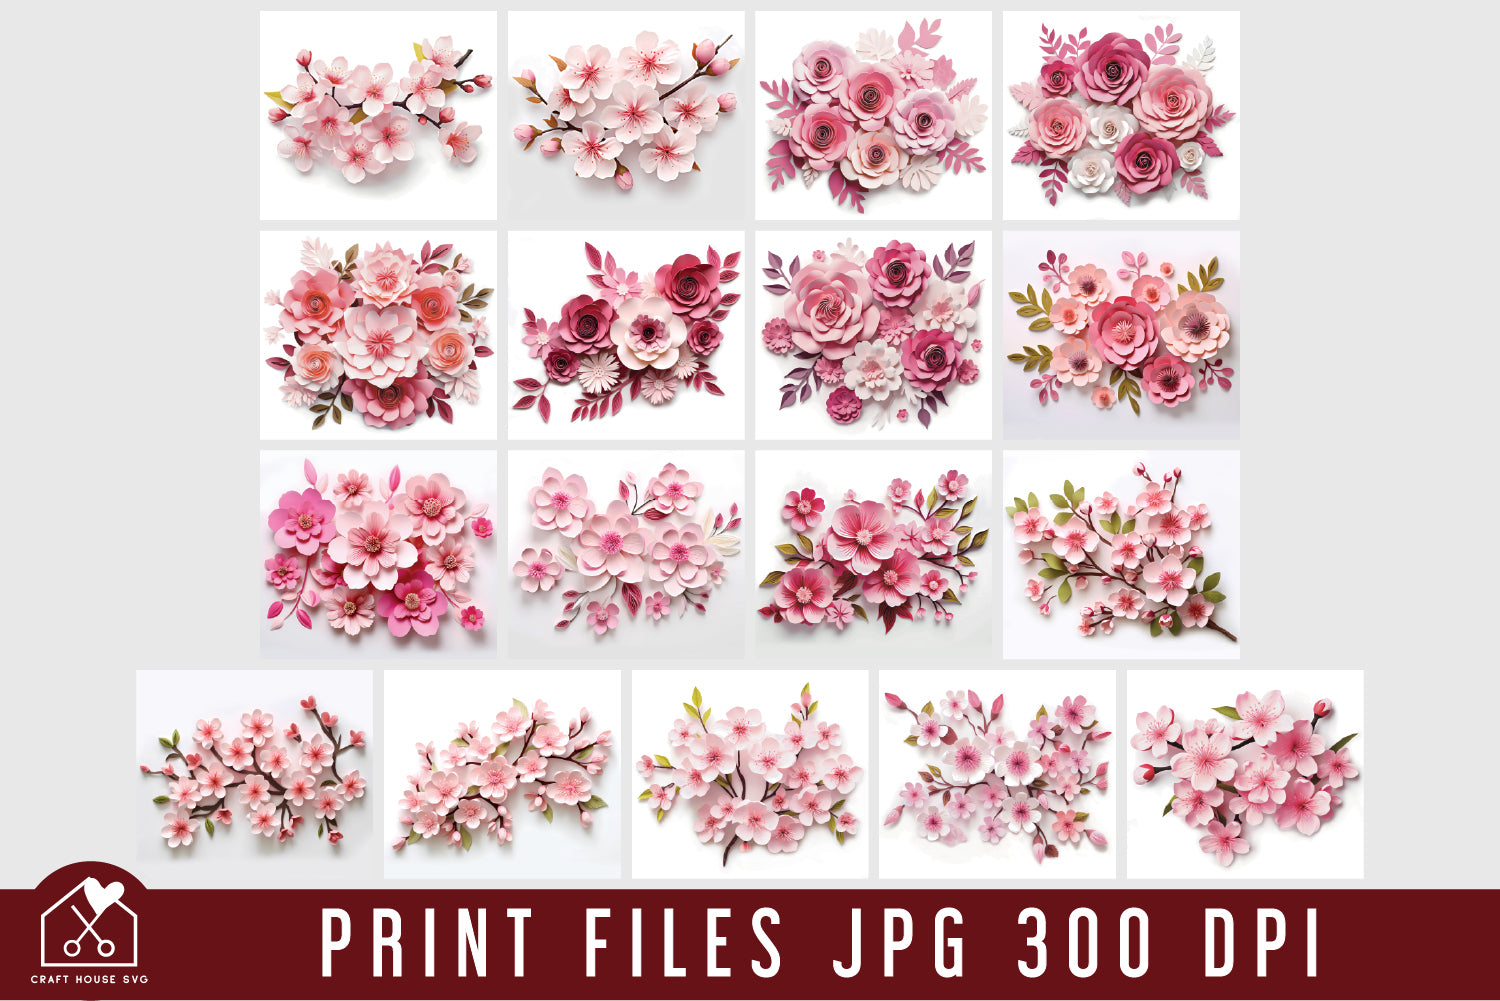 3D Pink Flowers Tumbler Wrap Bundle Sublimation Designs JPG